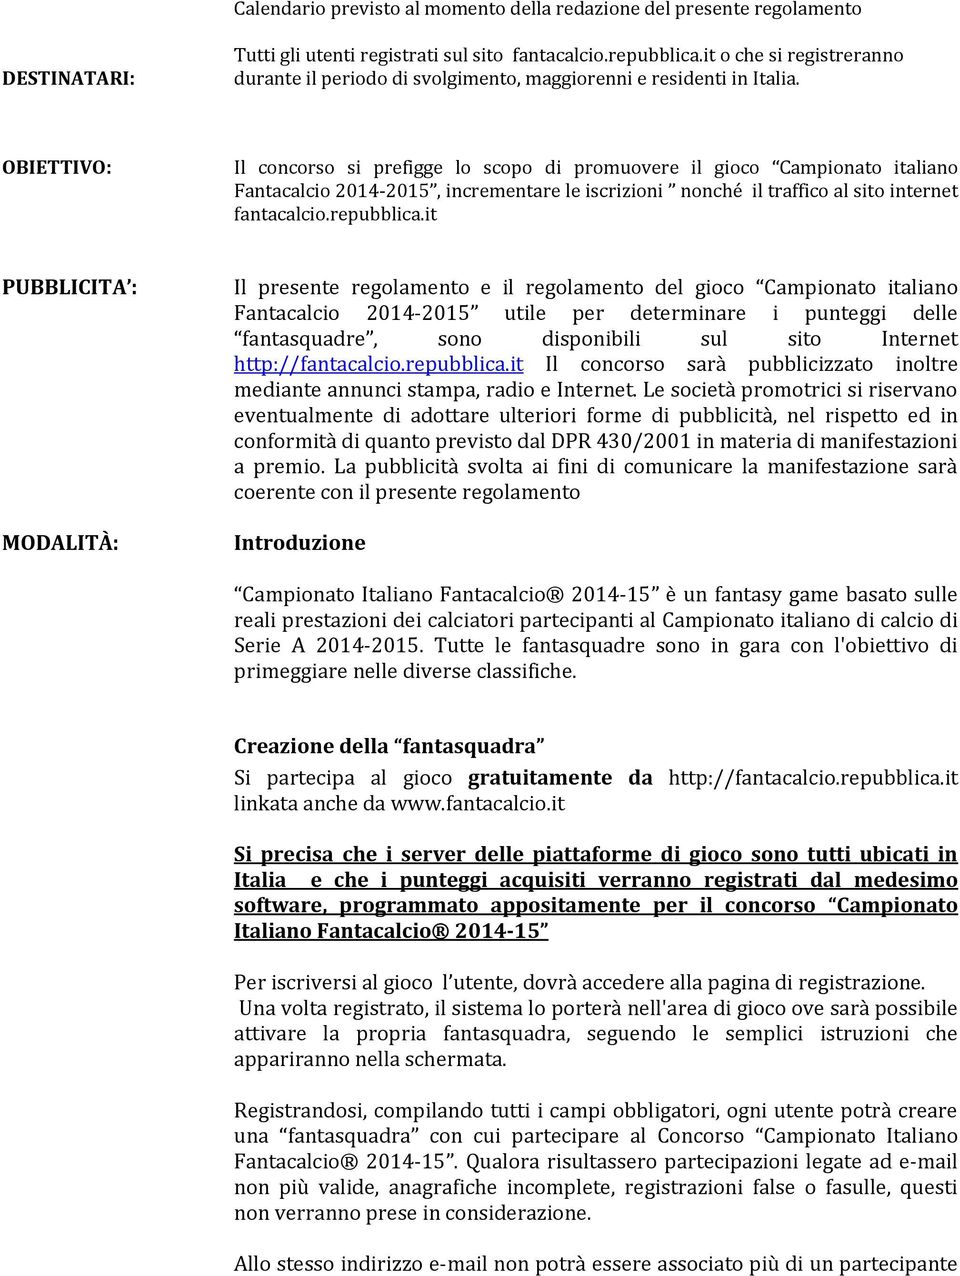 OBIETTIVO: Il concorso si prefigge lo scopo di promuovere il gioco Campionato italiano Fantacalcio 2014-2015, incrementare le iscrizioni nonché il traffico al sito internet fantacalcio.repubblica.